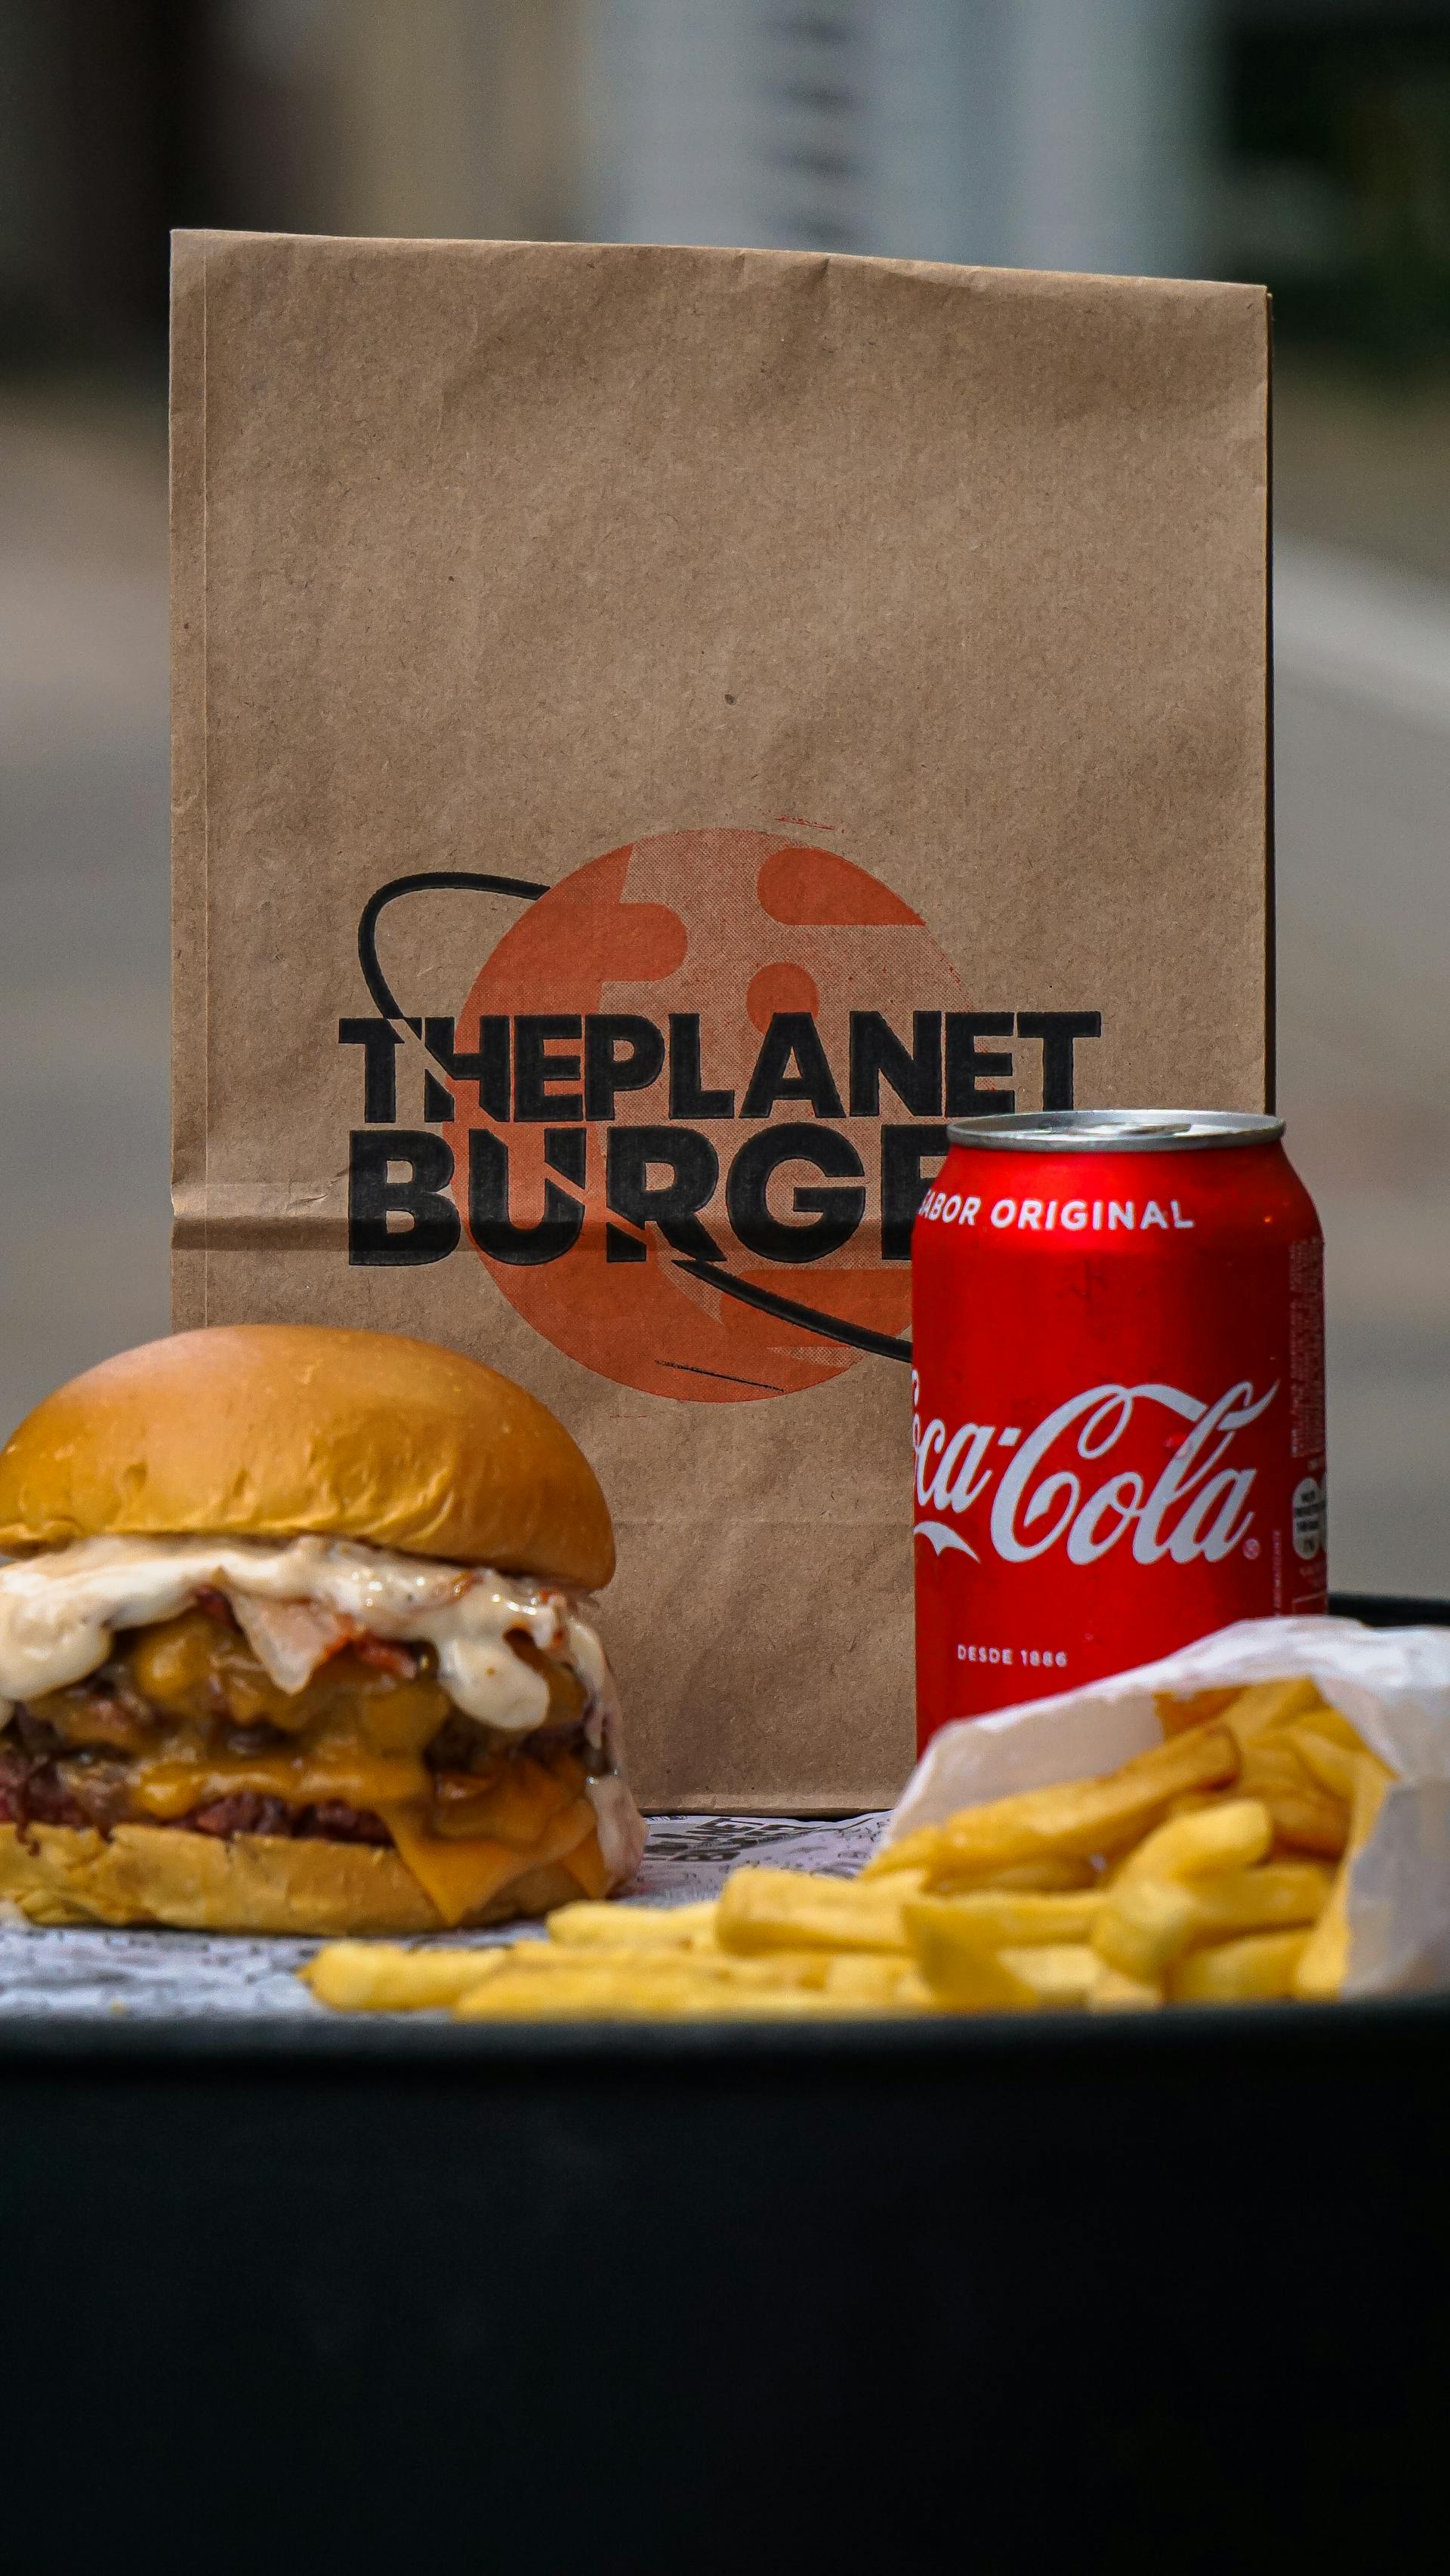 Una hamburguesa, patatas fritas y una lata de refresco junto a una bolsa de papel | Fuente: Pexels